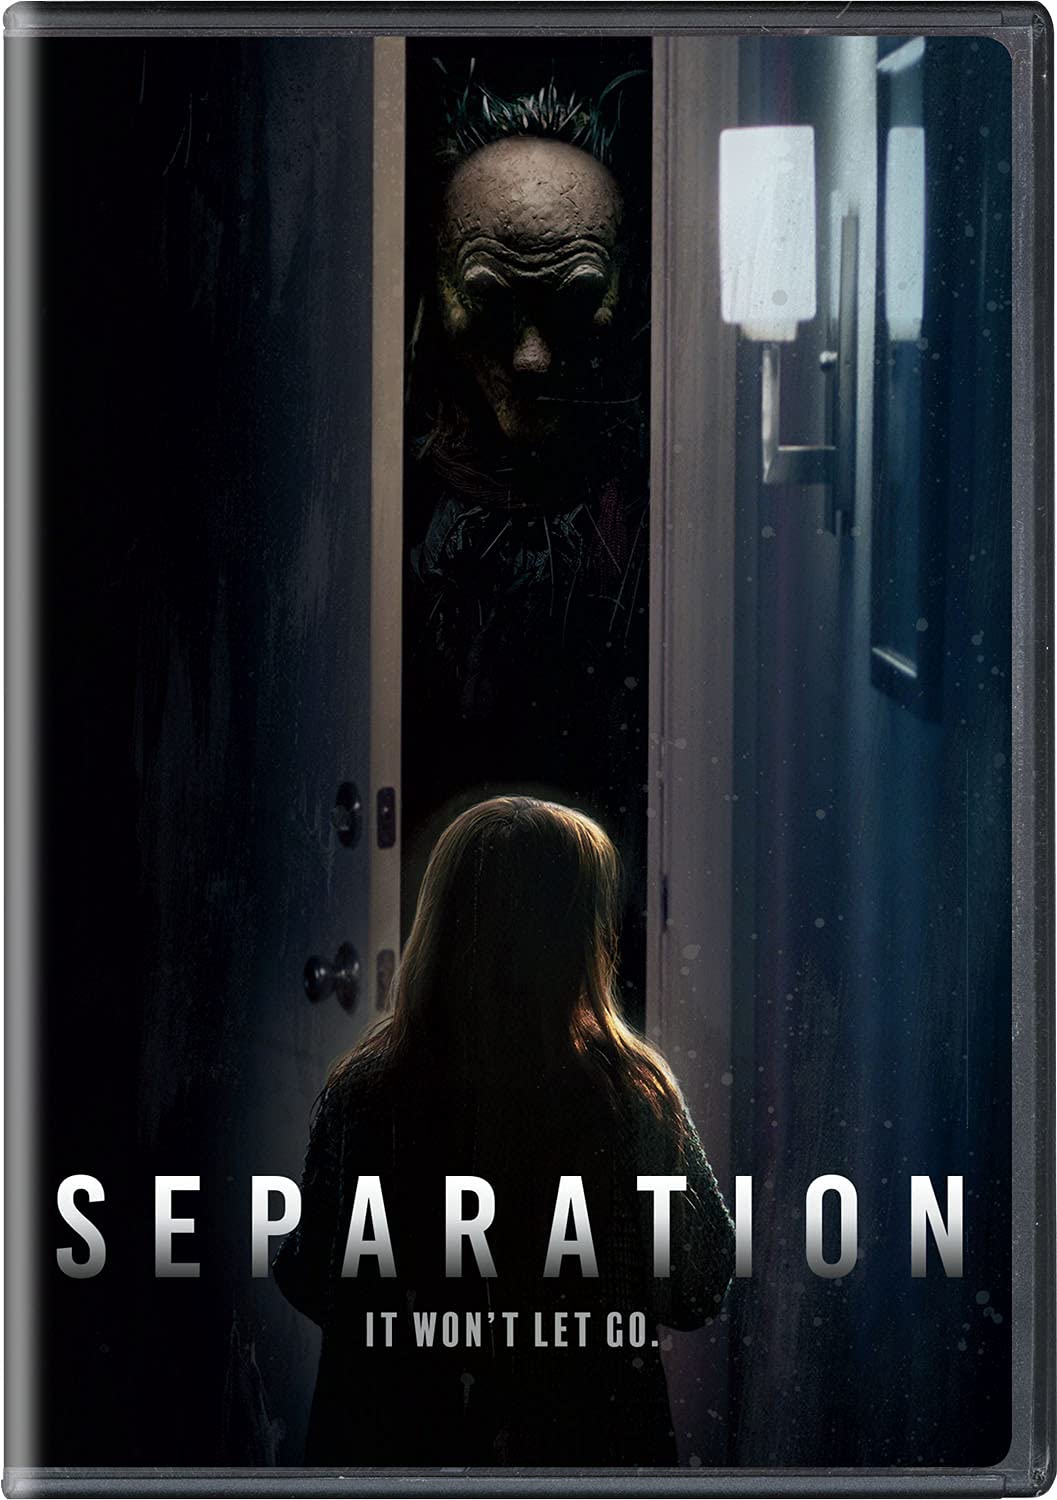 ดูหนังออนไลน์ฟรี Separation 2021 วิโยคมรณะ movie678